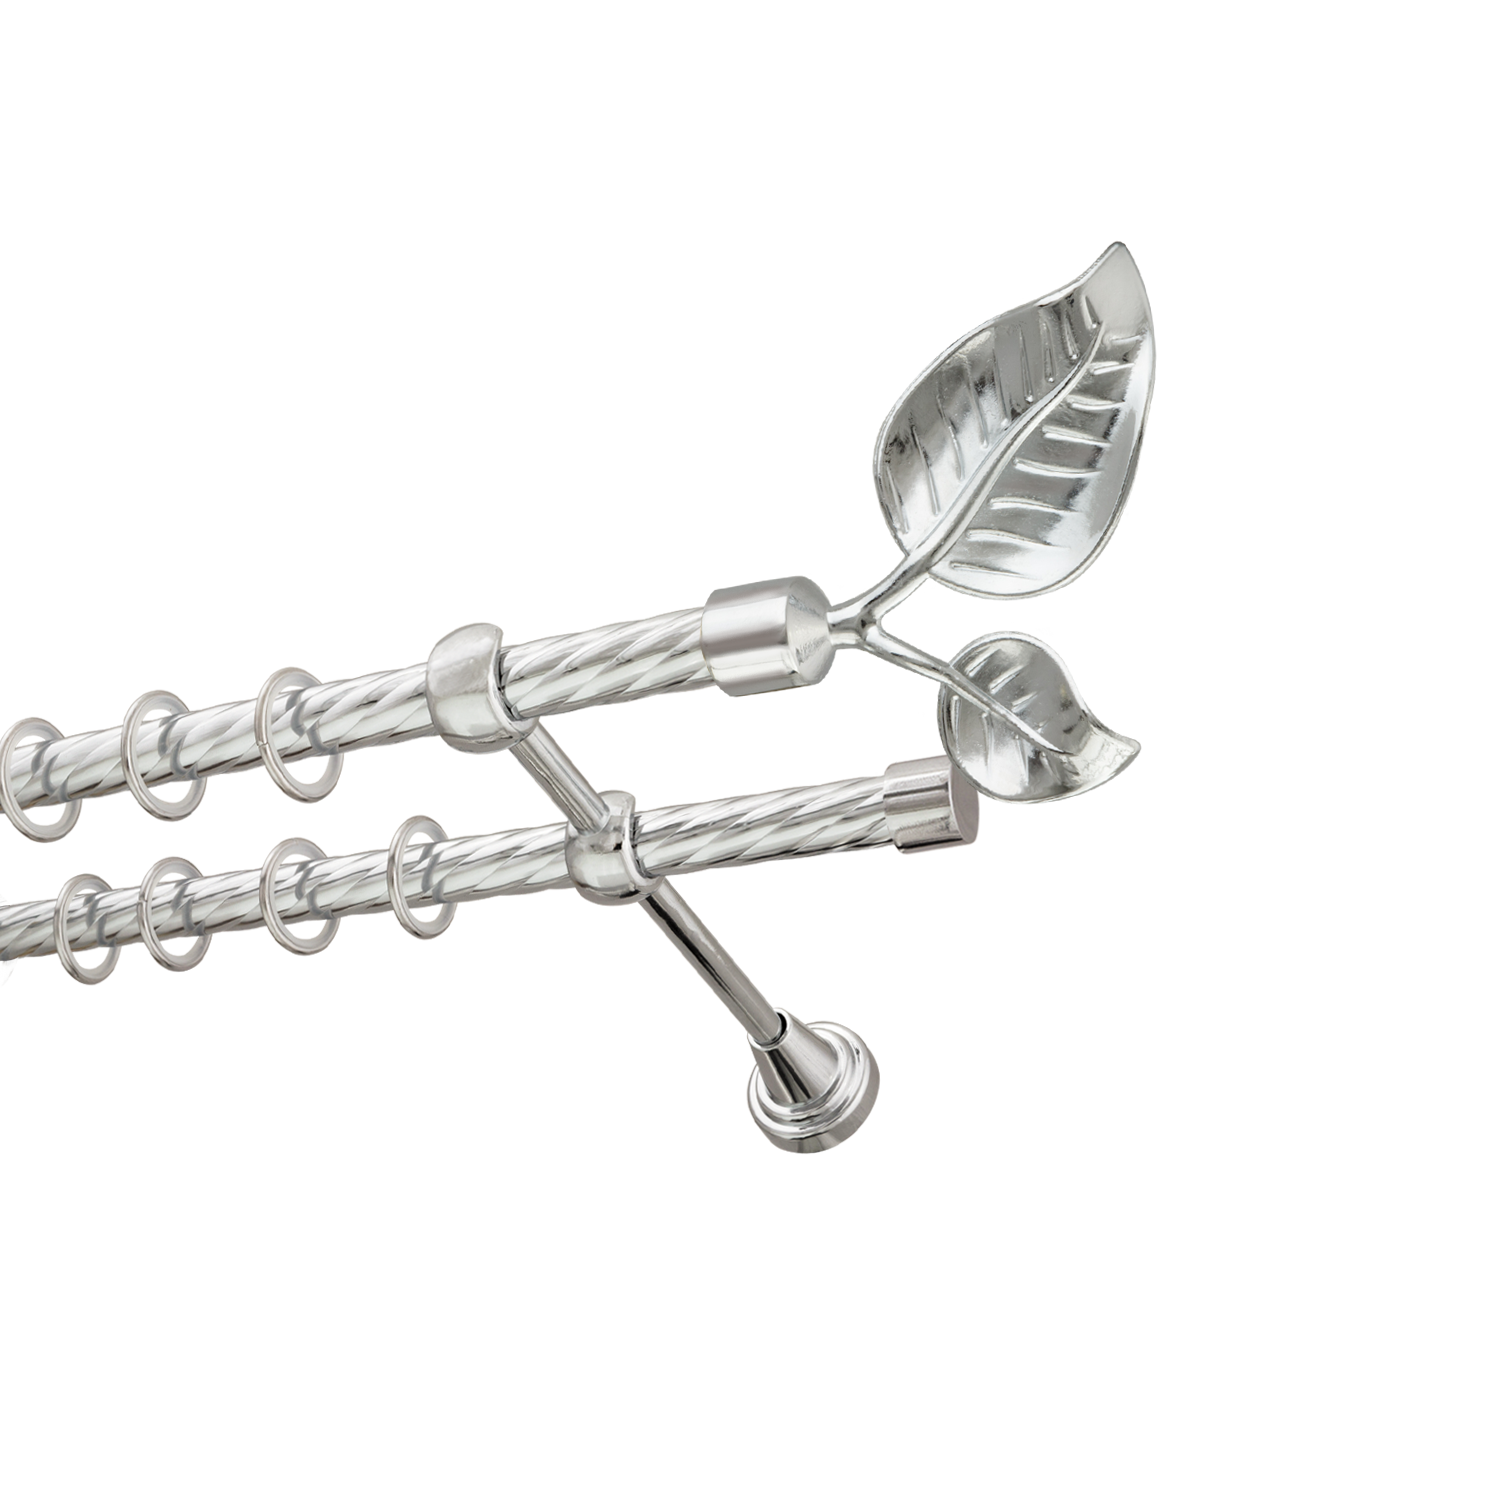 Металлический карниз для штор Тропик, двухрядный 16/16 мм, серебро, витая штанга, длина 160 см - фото Wikidecor.ru